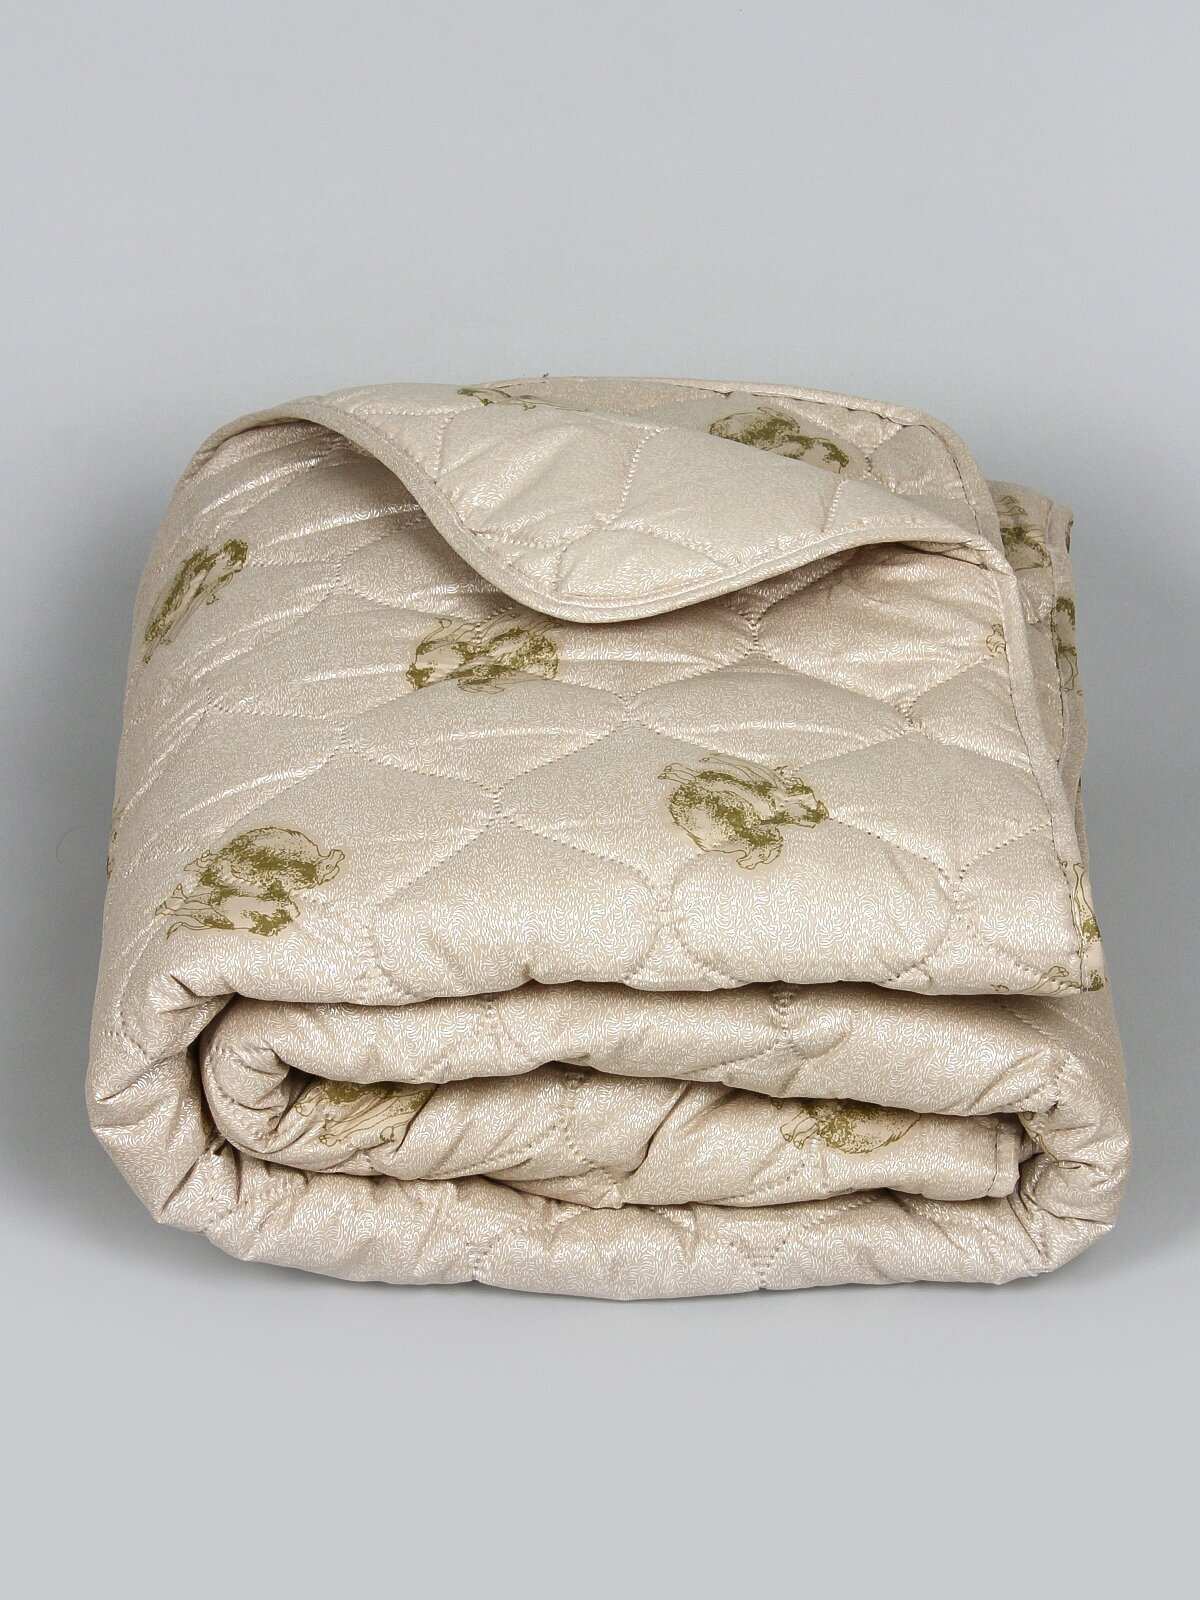 Одеяло "Верблюжья шерсть" полновесное, Евро размер, в поплексе, плотность 300 г/м2 - фотография № 6